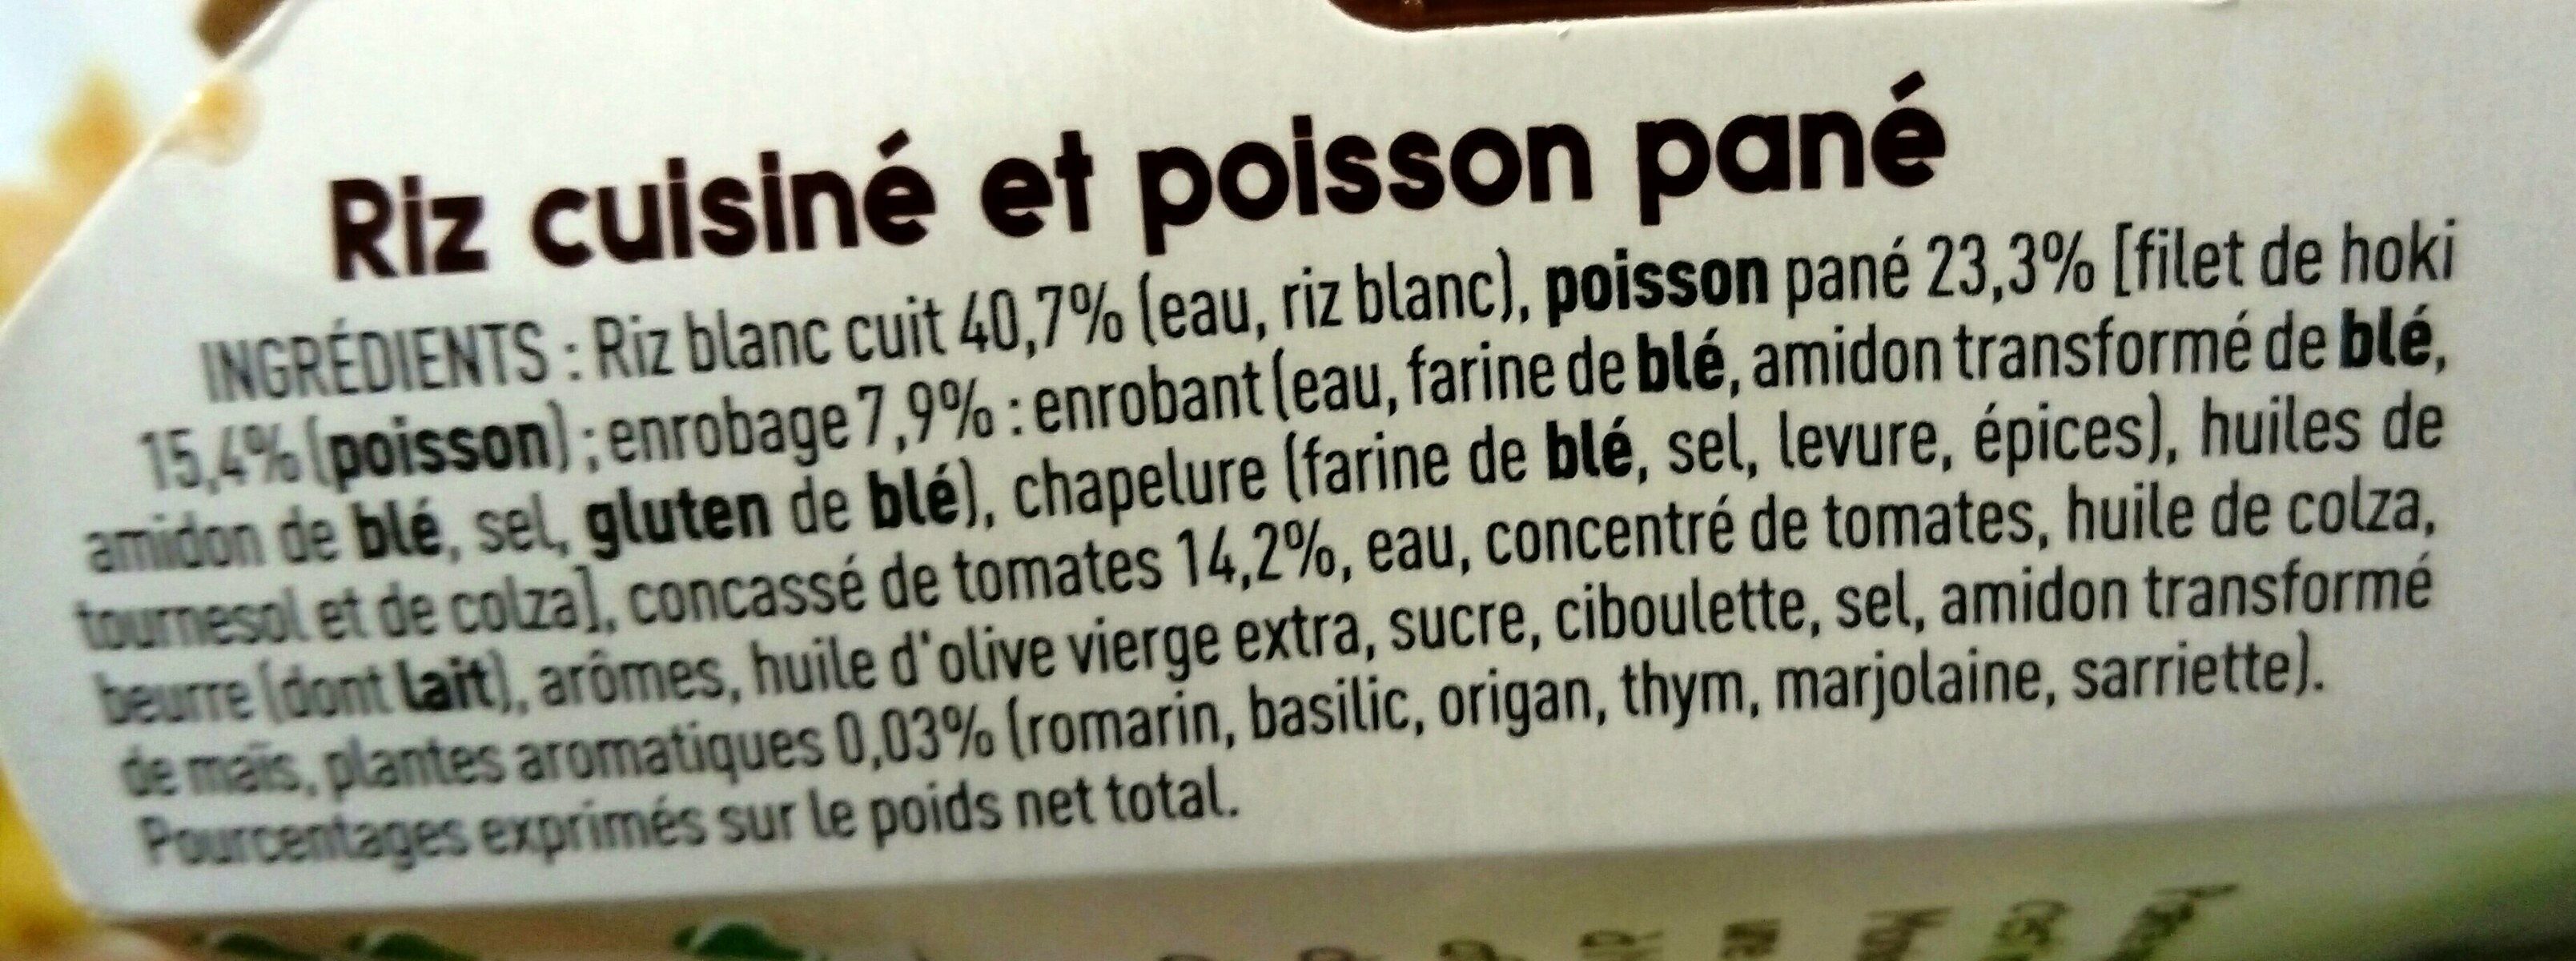 Poisson pané Riz tomaté - Ingredients - fr